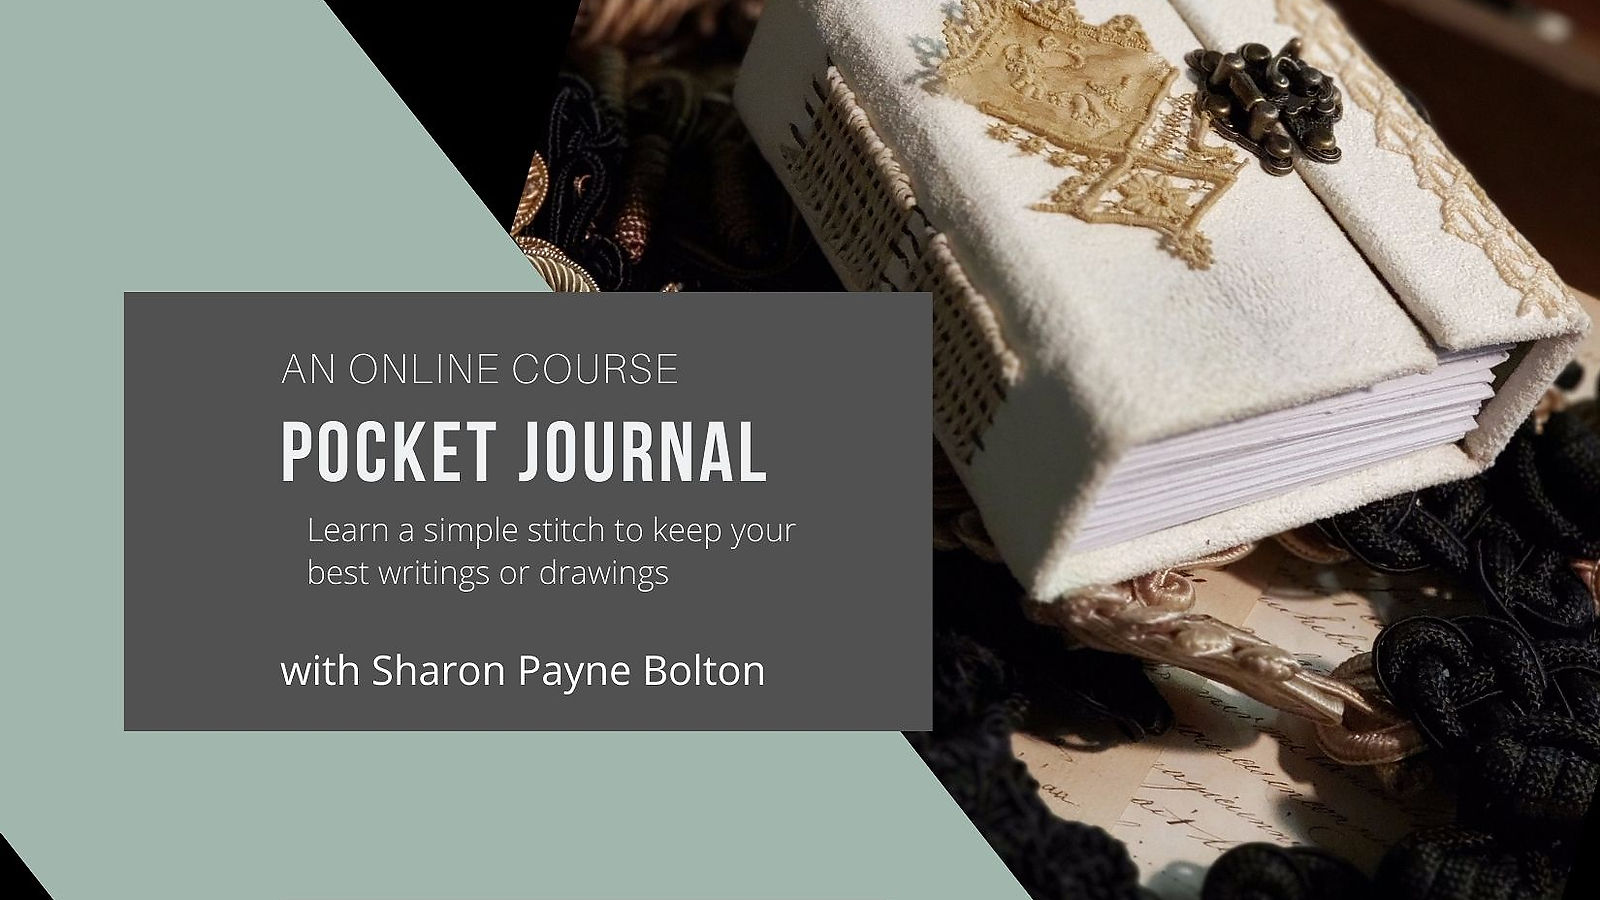 Pocket Journal - an Online Course